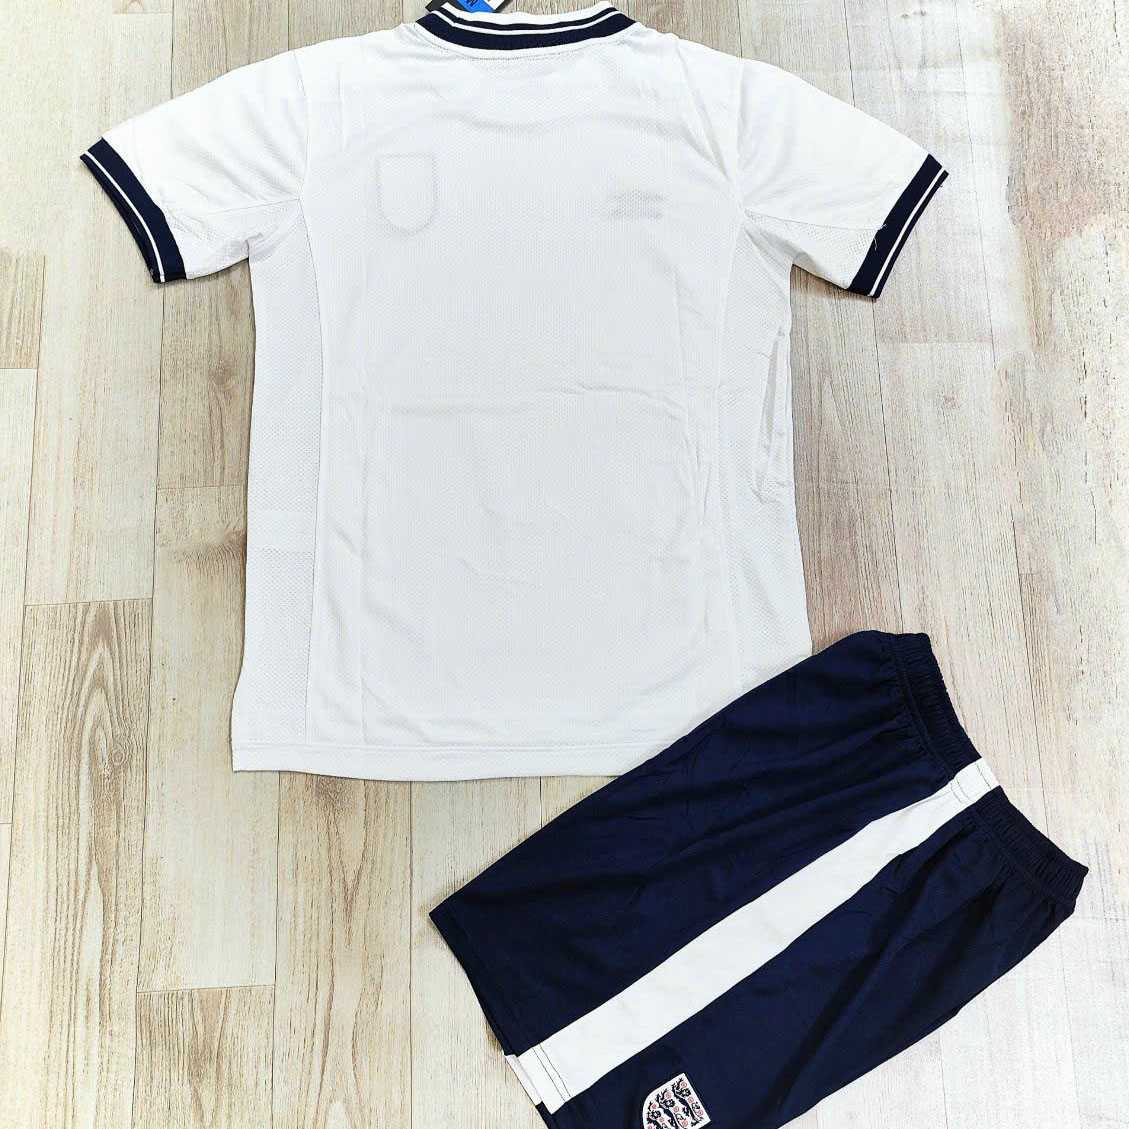 Bộ quần áo đá bóng đội tuyển anh logo england umbro màu full trắng quần tím than đen có túi 3